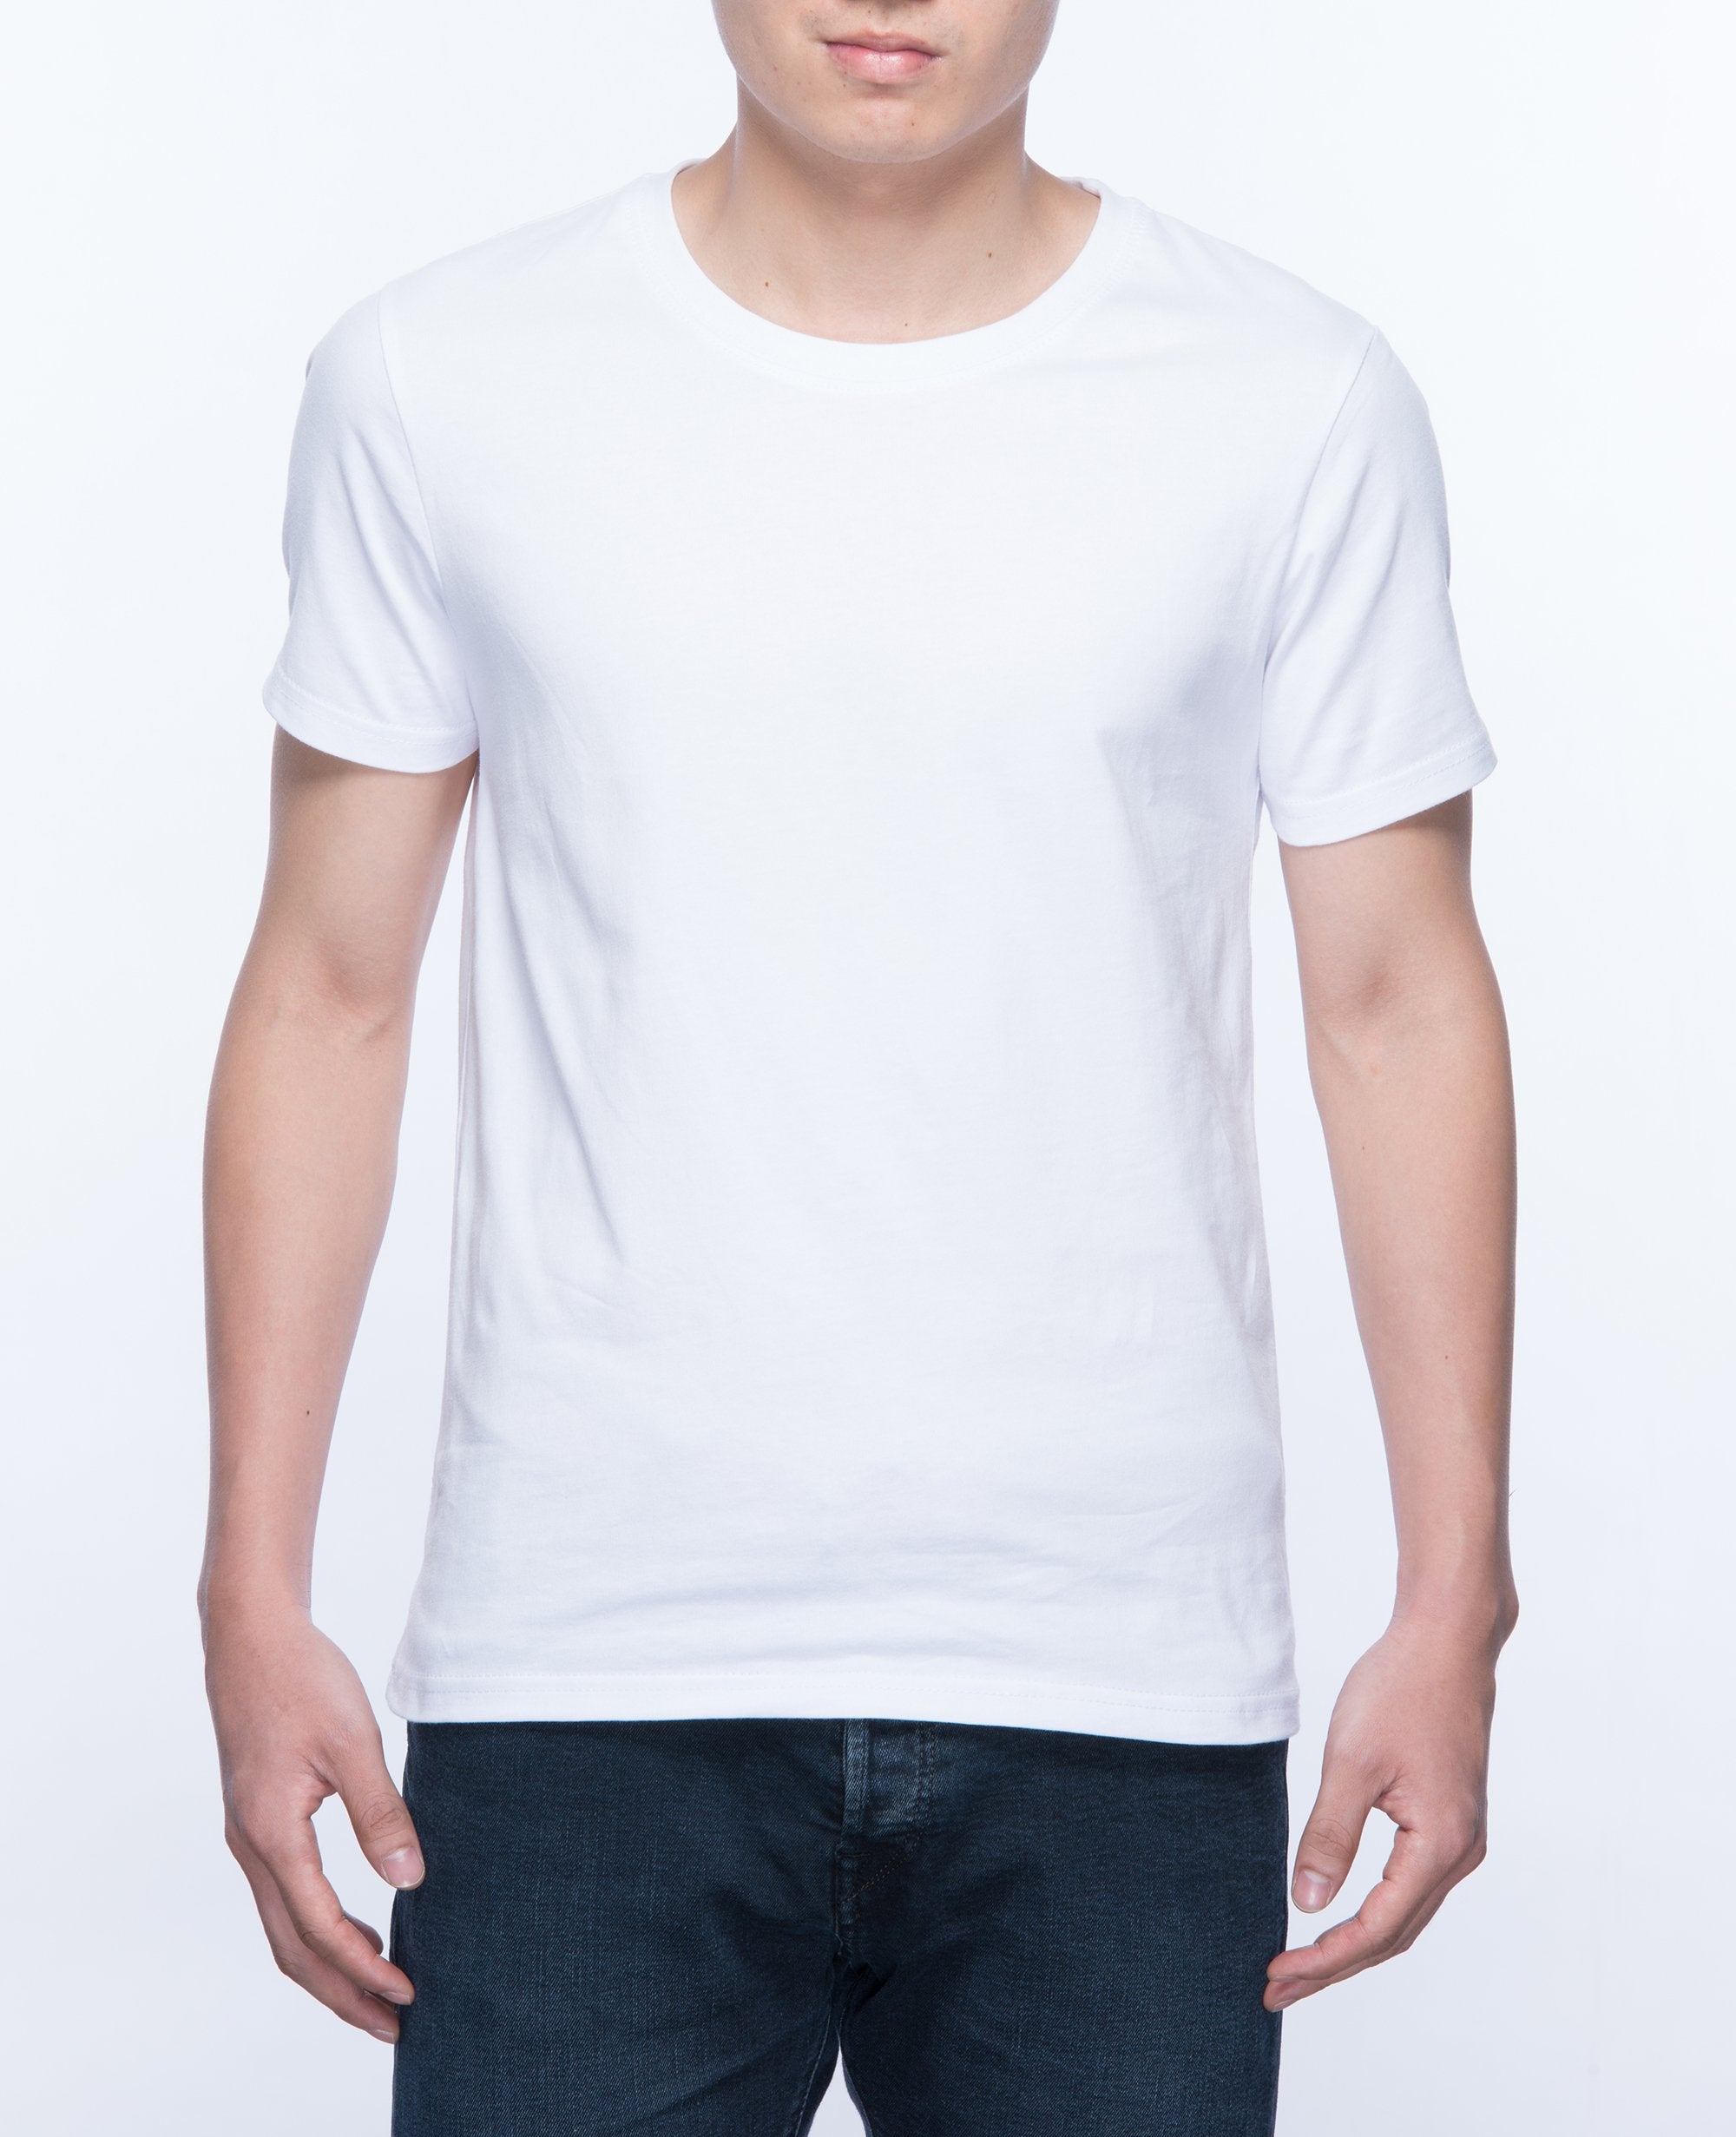 white t shirt for men